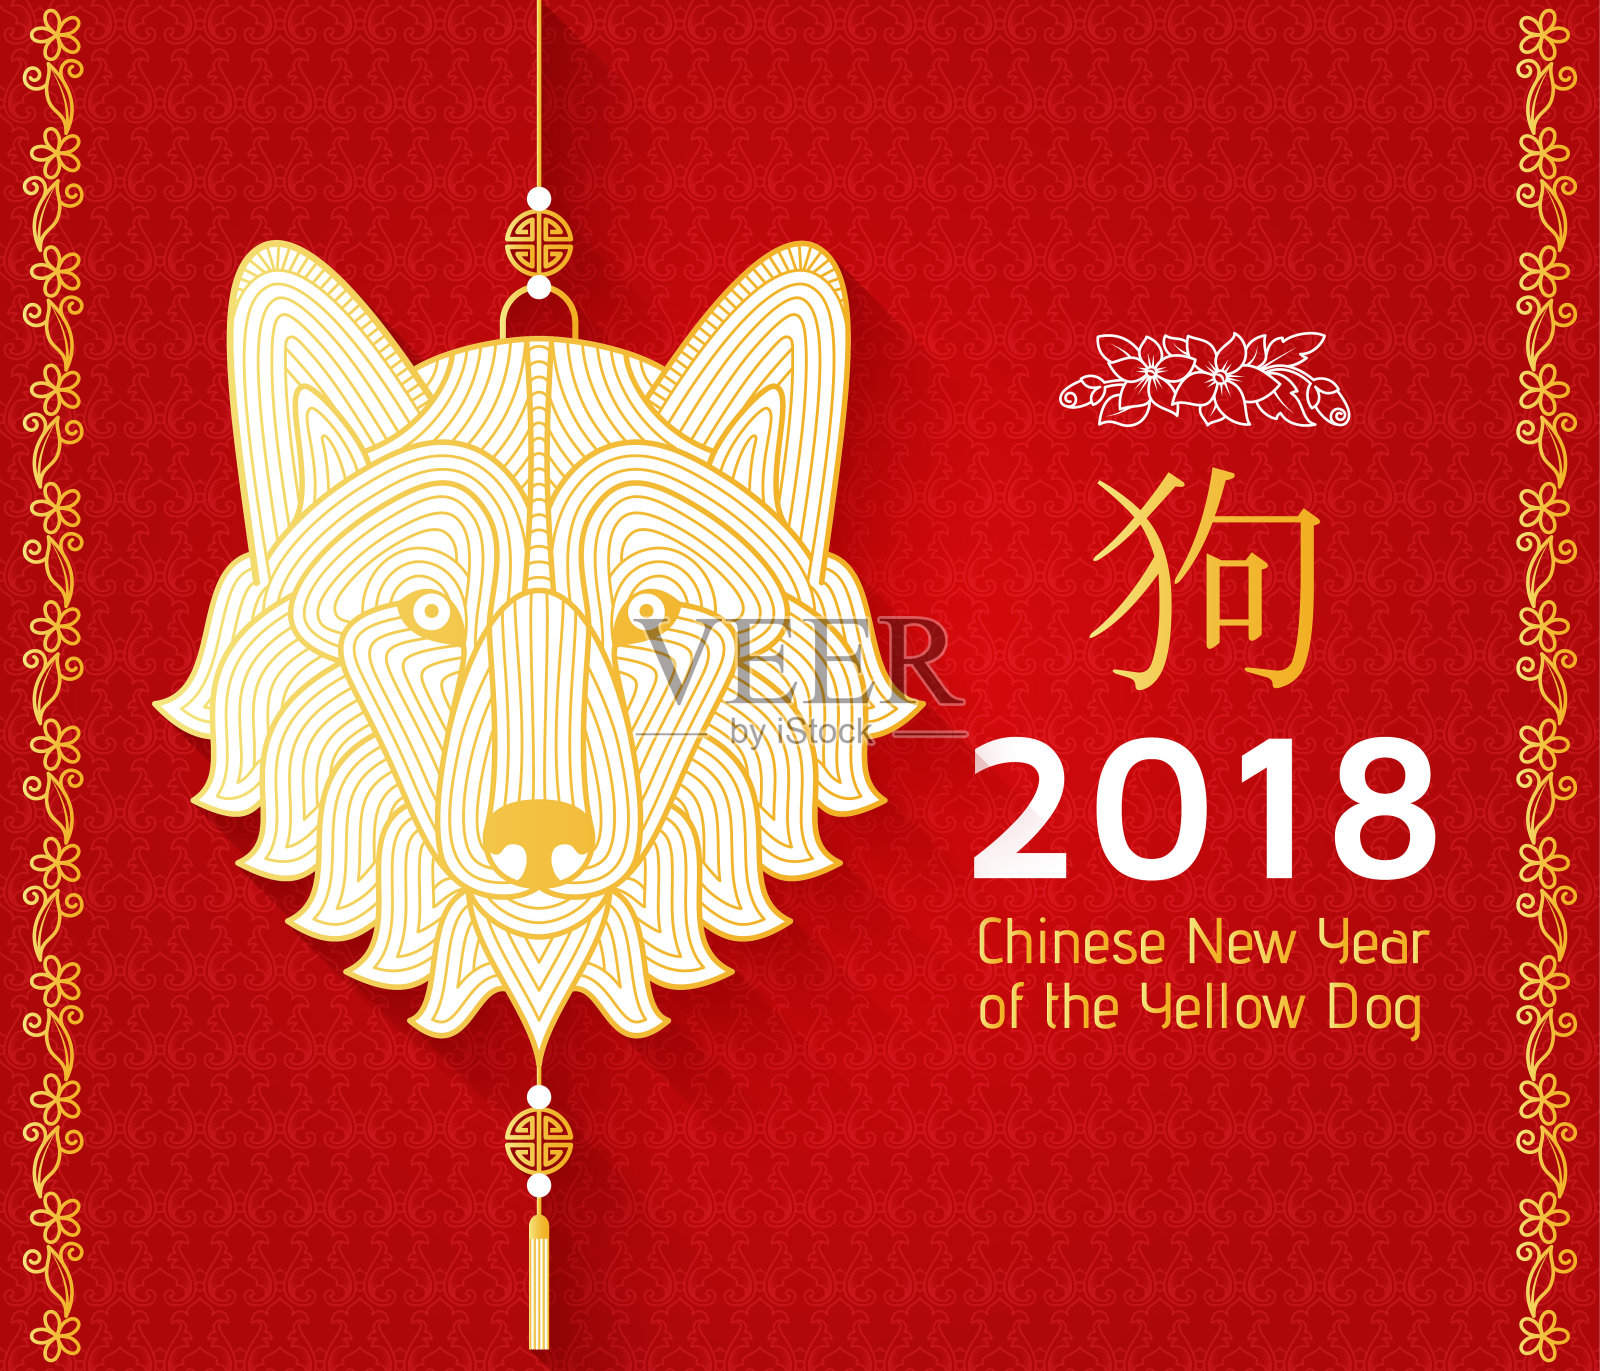 中国新年的背景与创意风格的狗插画图片素材